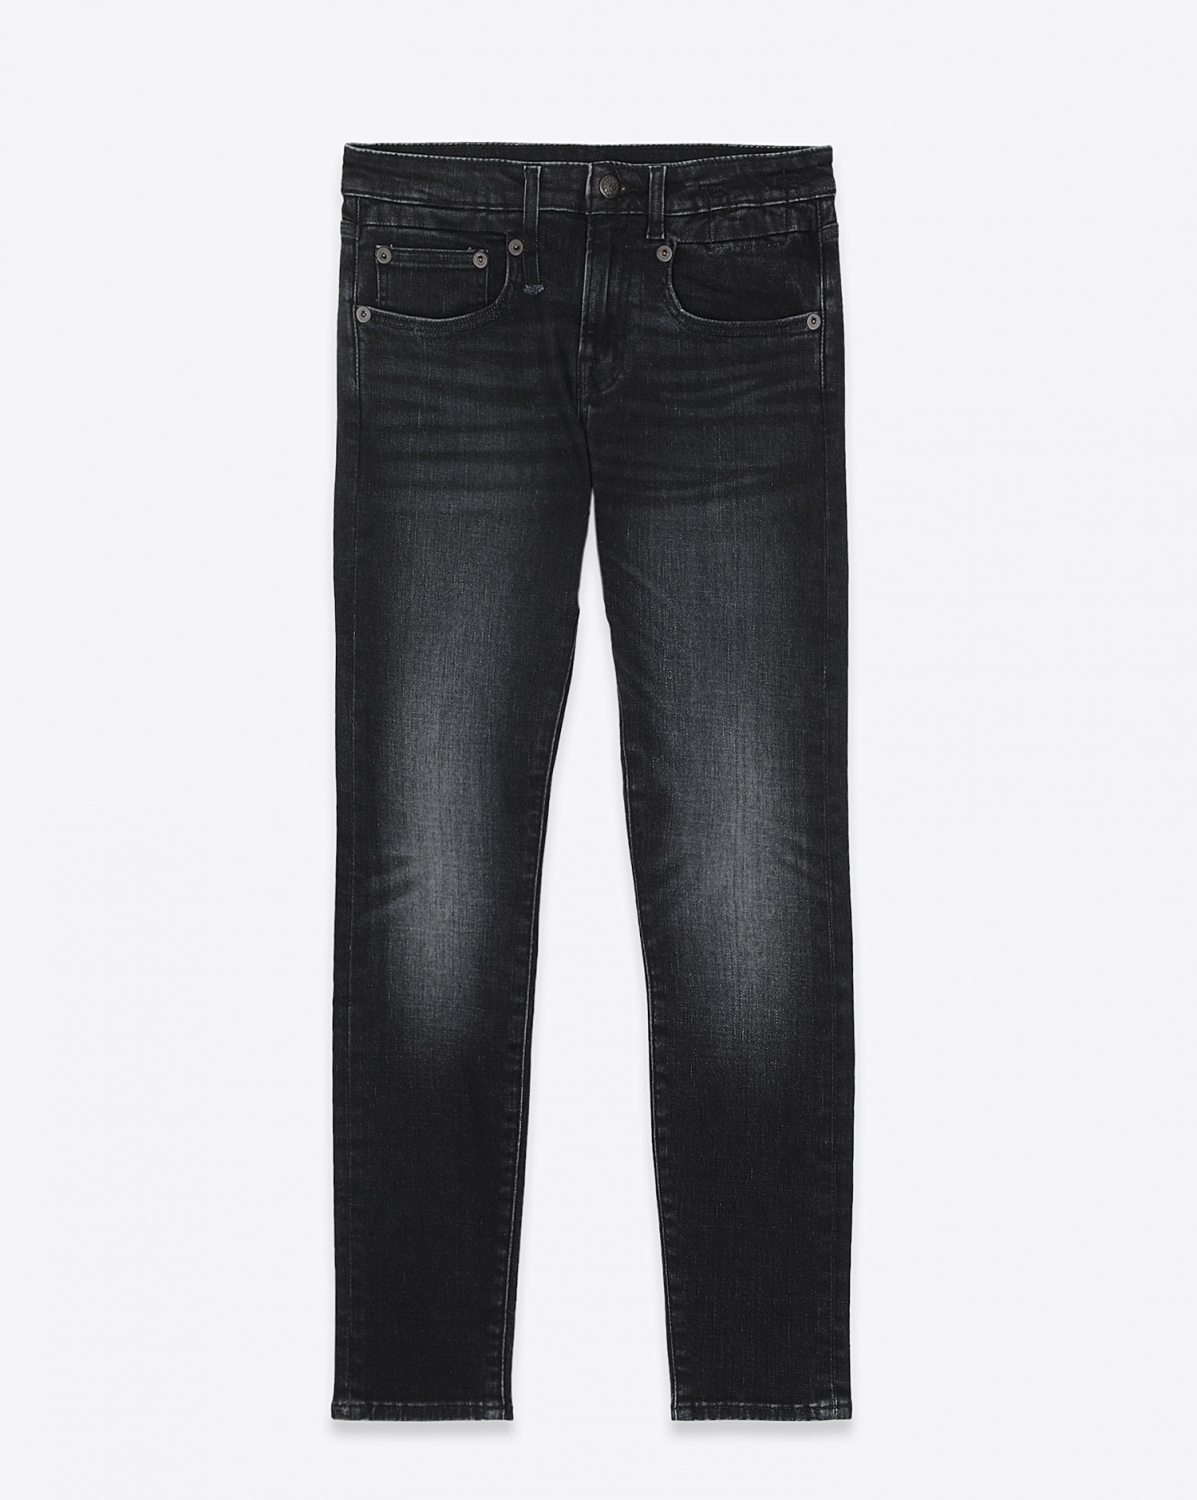 Jeans R13 Denim Collection Boy Skinny - Morrison Black